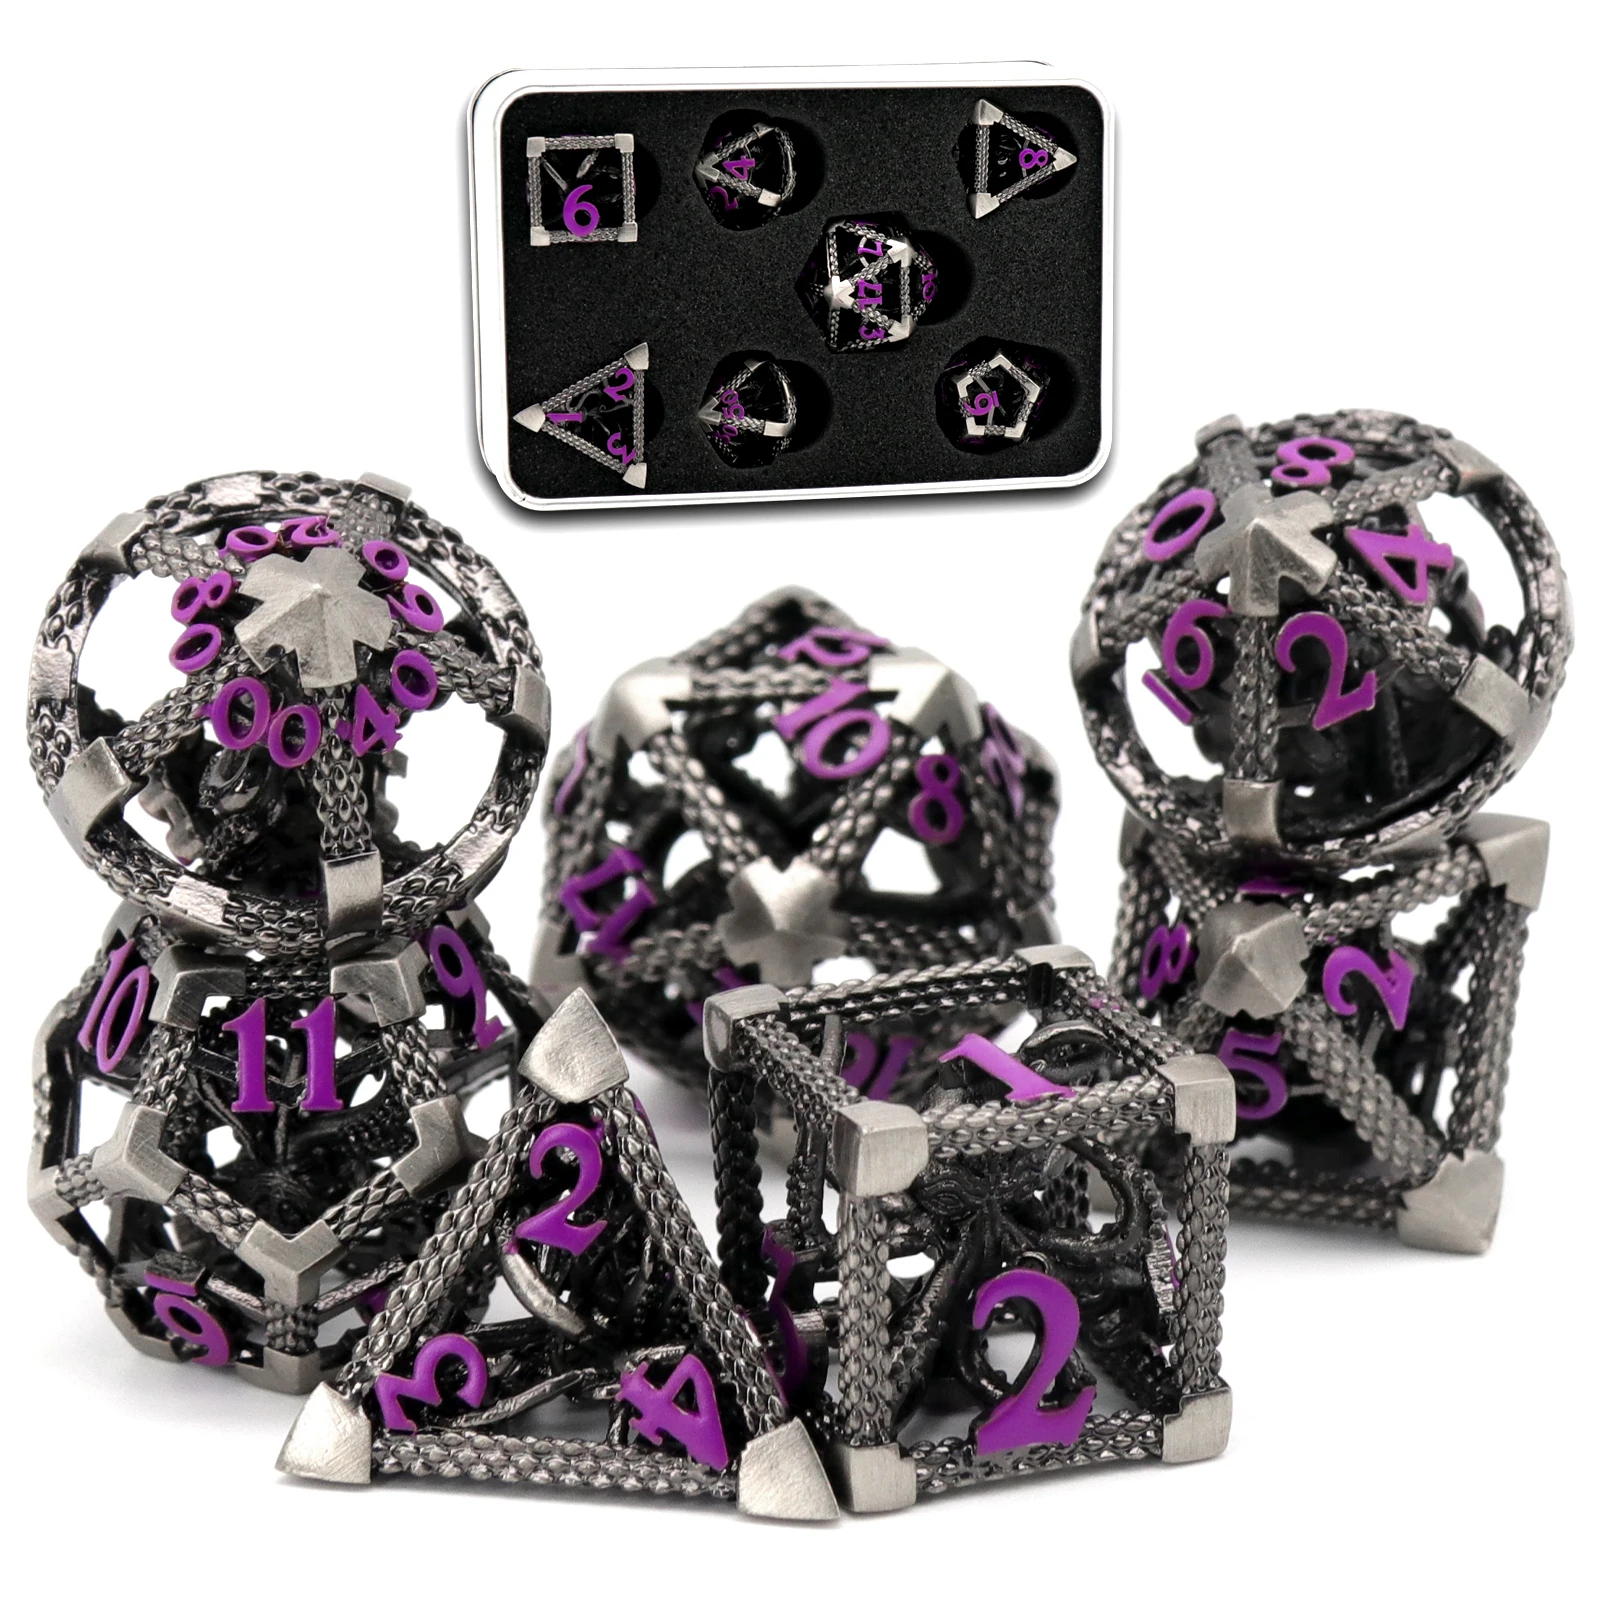 Набор Кубиков DND для Ролевой игры, Набор Кубиков Cthulhu ZHOORQI D & D Dice для Настольной игры MTG Rpg Rol Pathfinder (Старинный Серебристо-Фиолетовый)